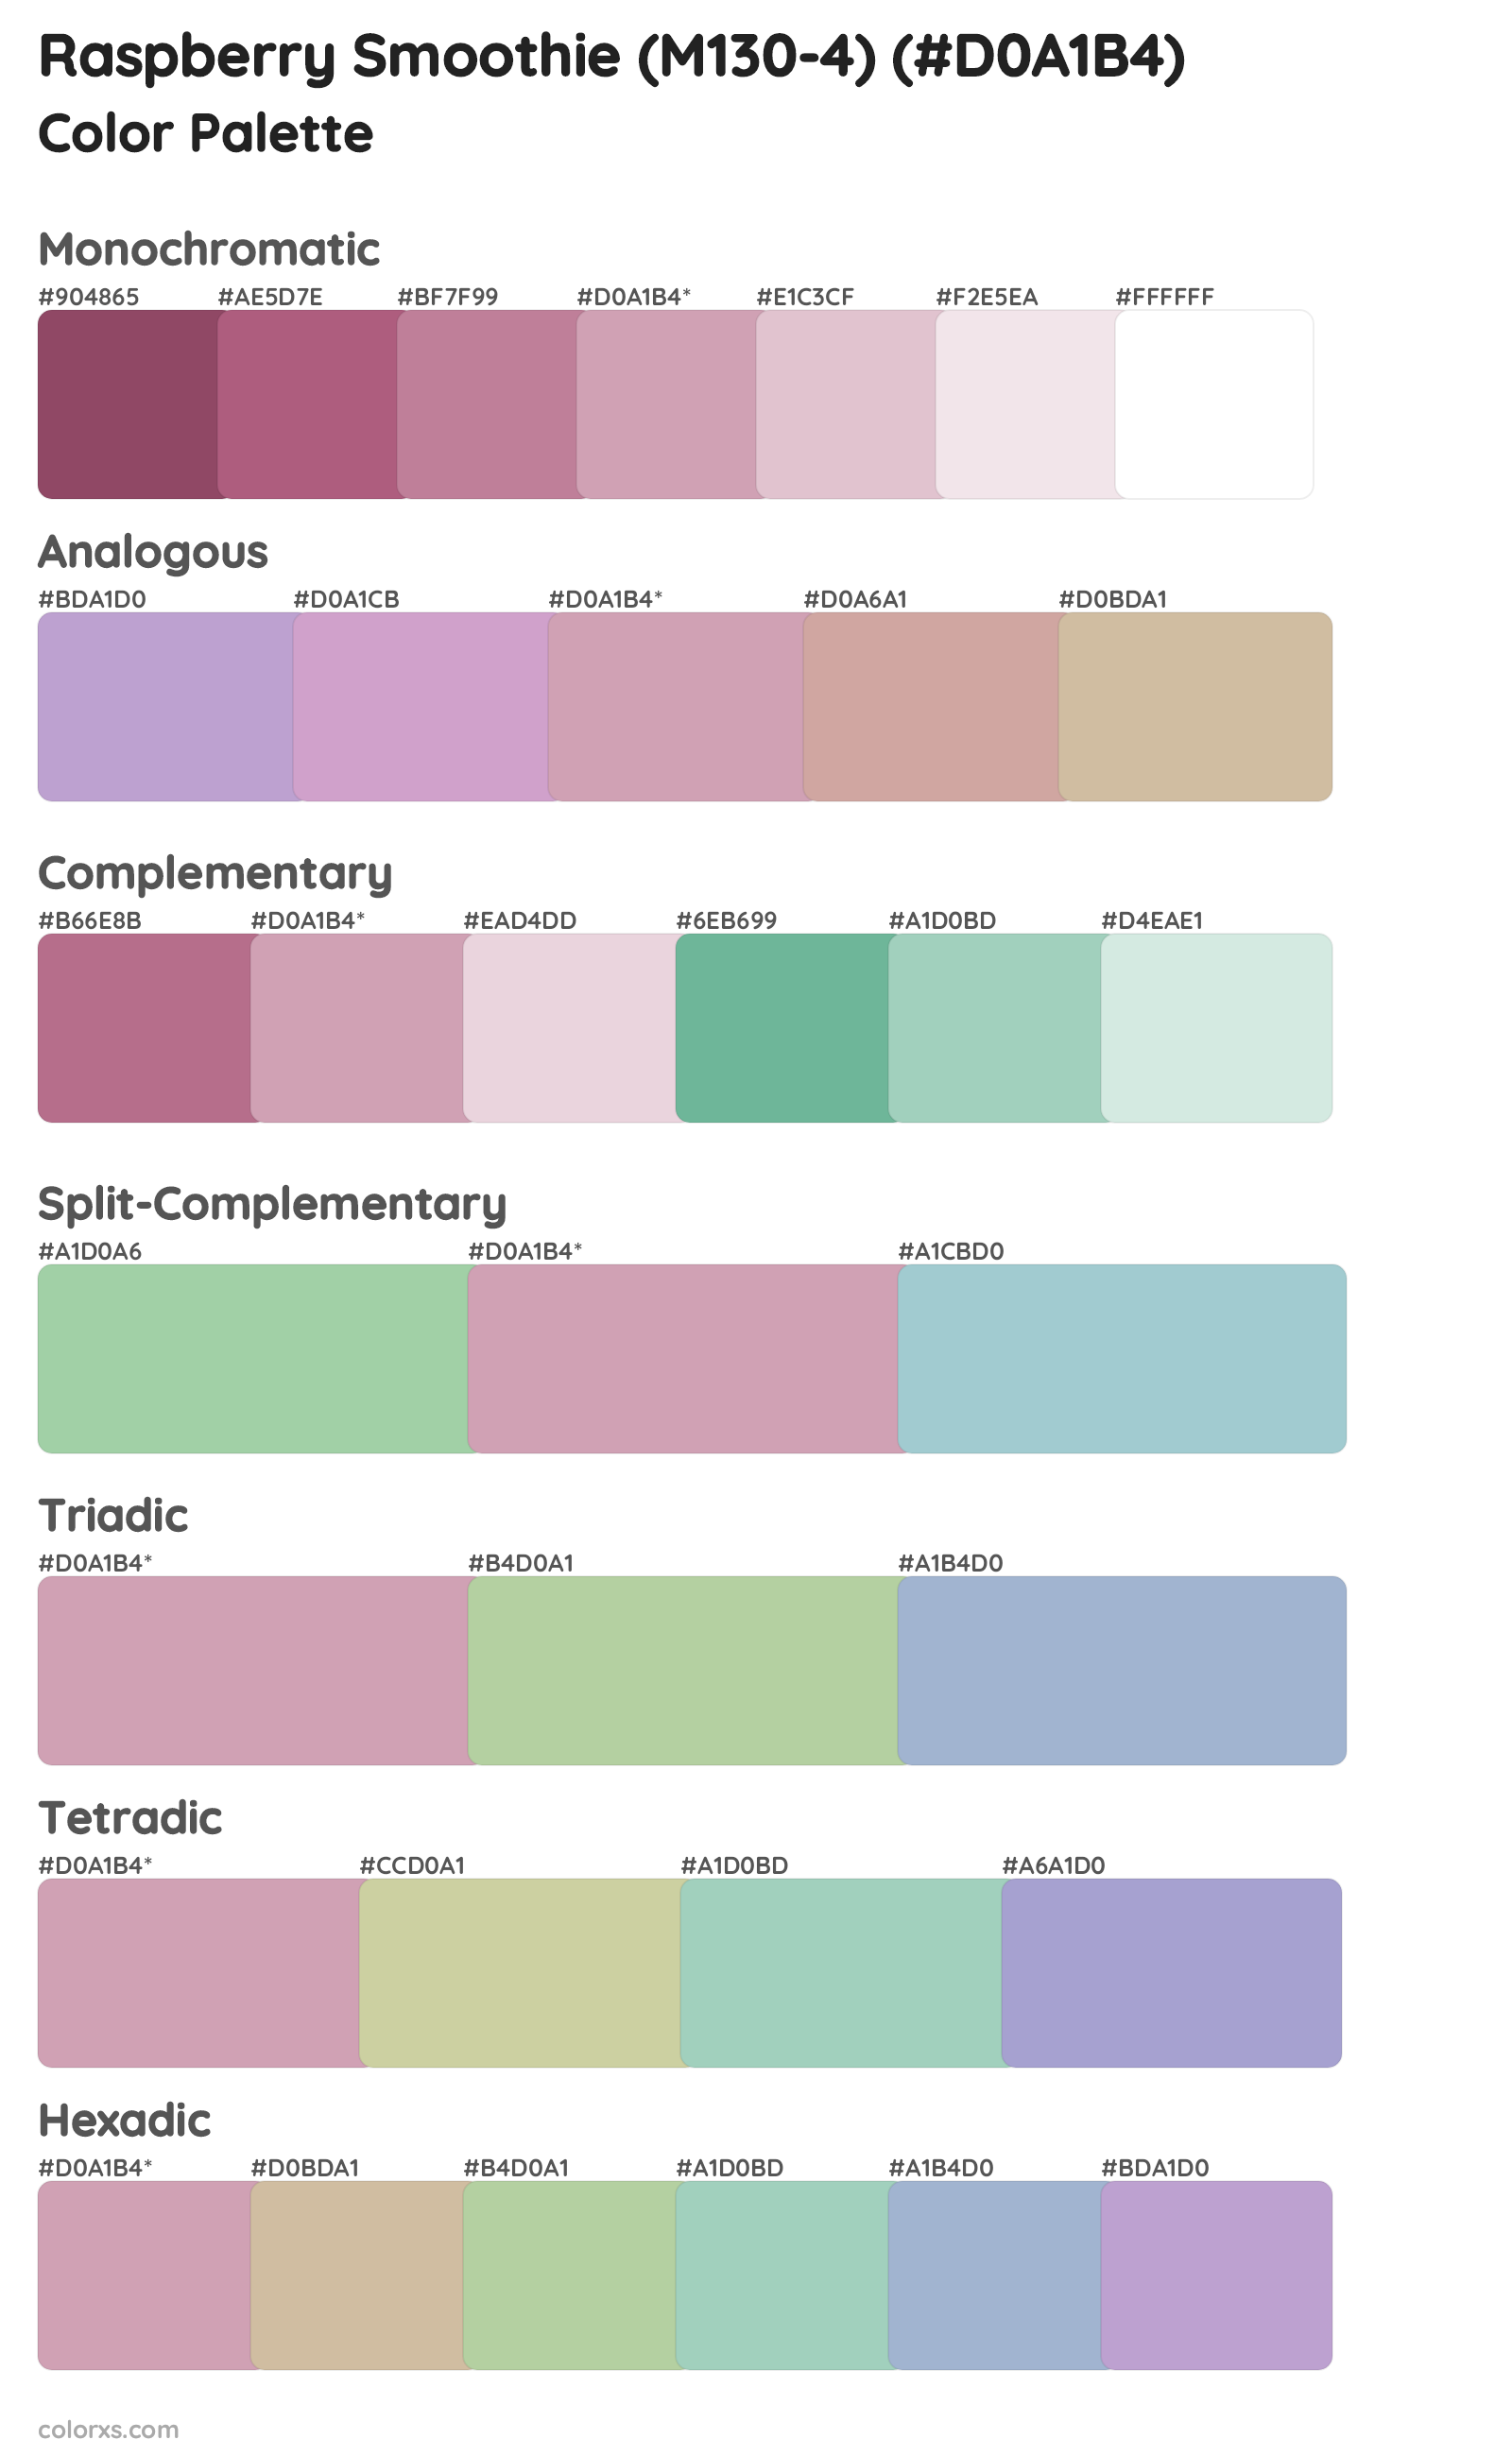 Raspberry Smoothie (M130-4) Color Scheme Palettes